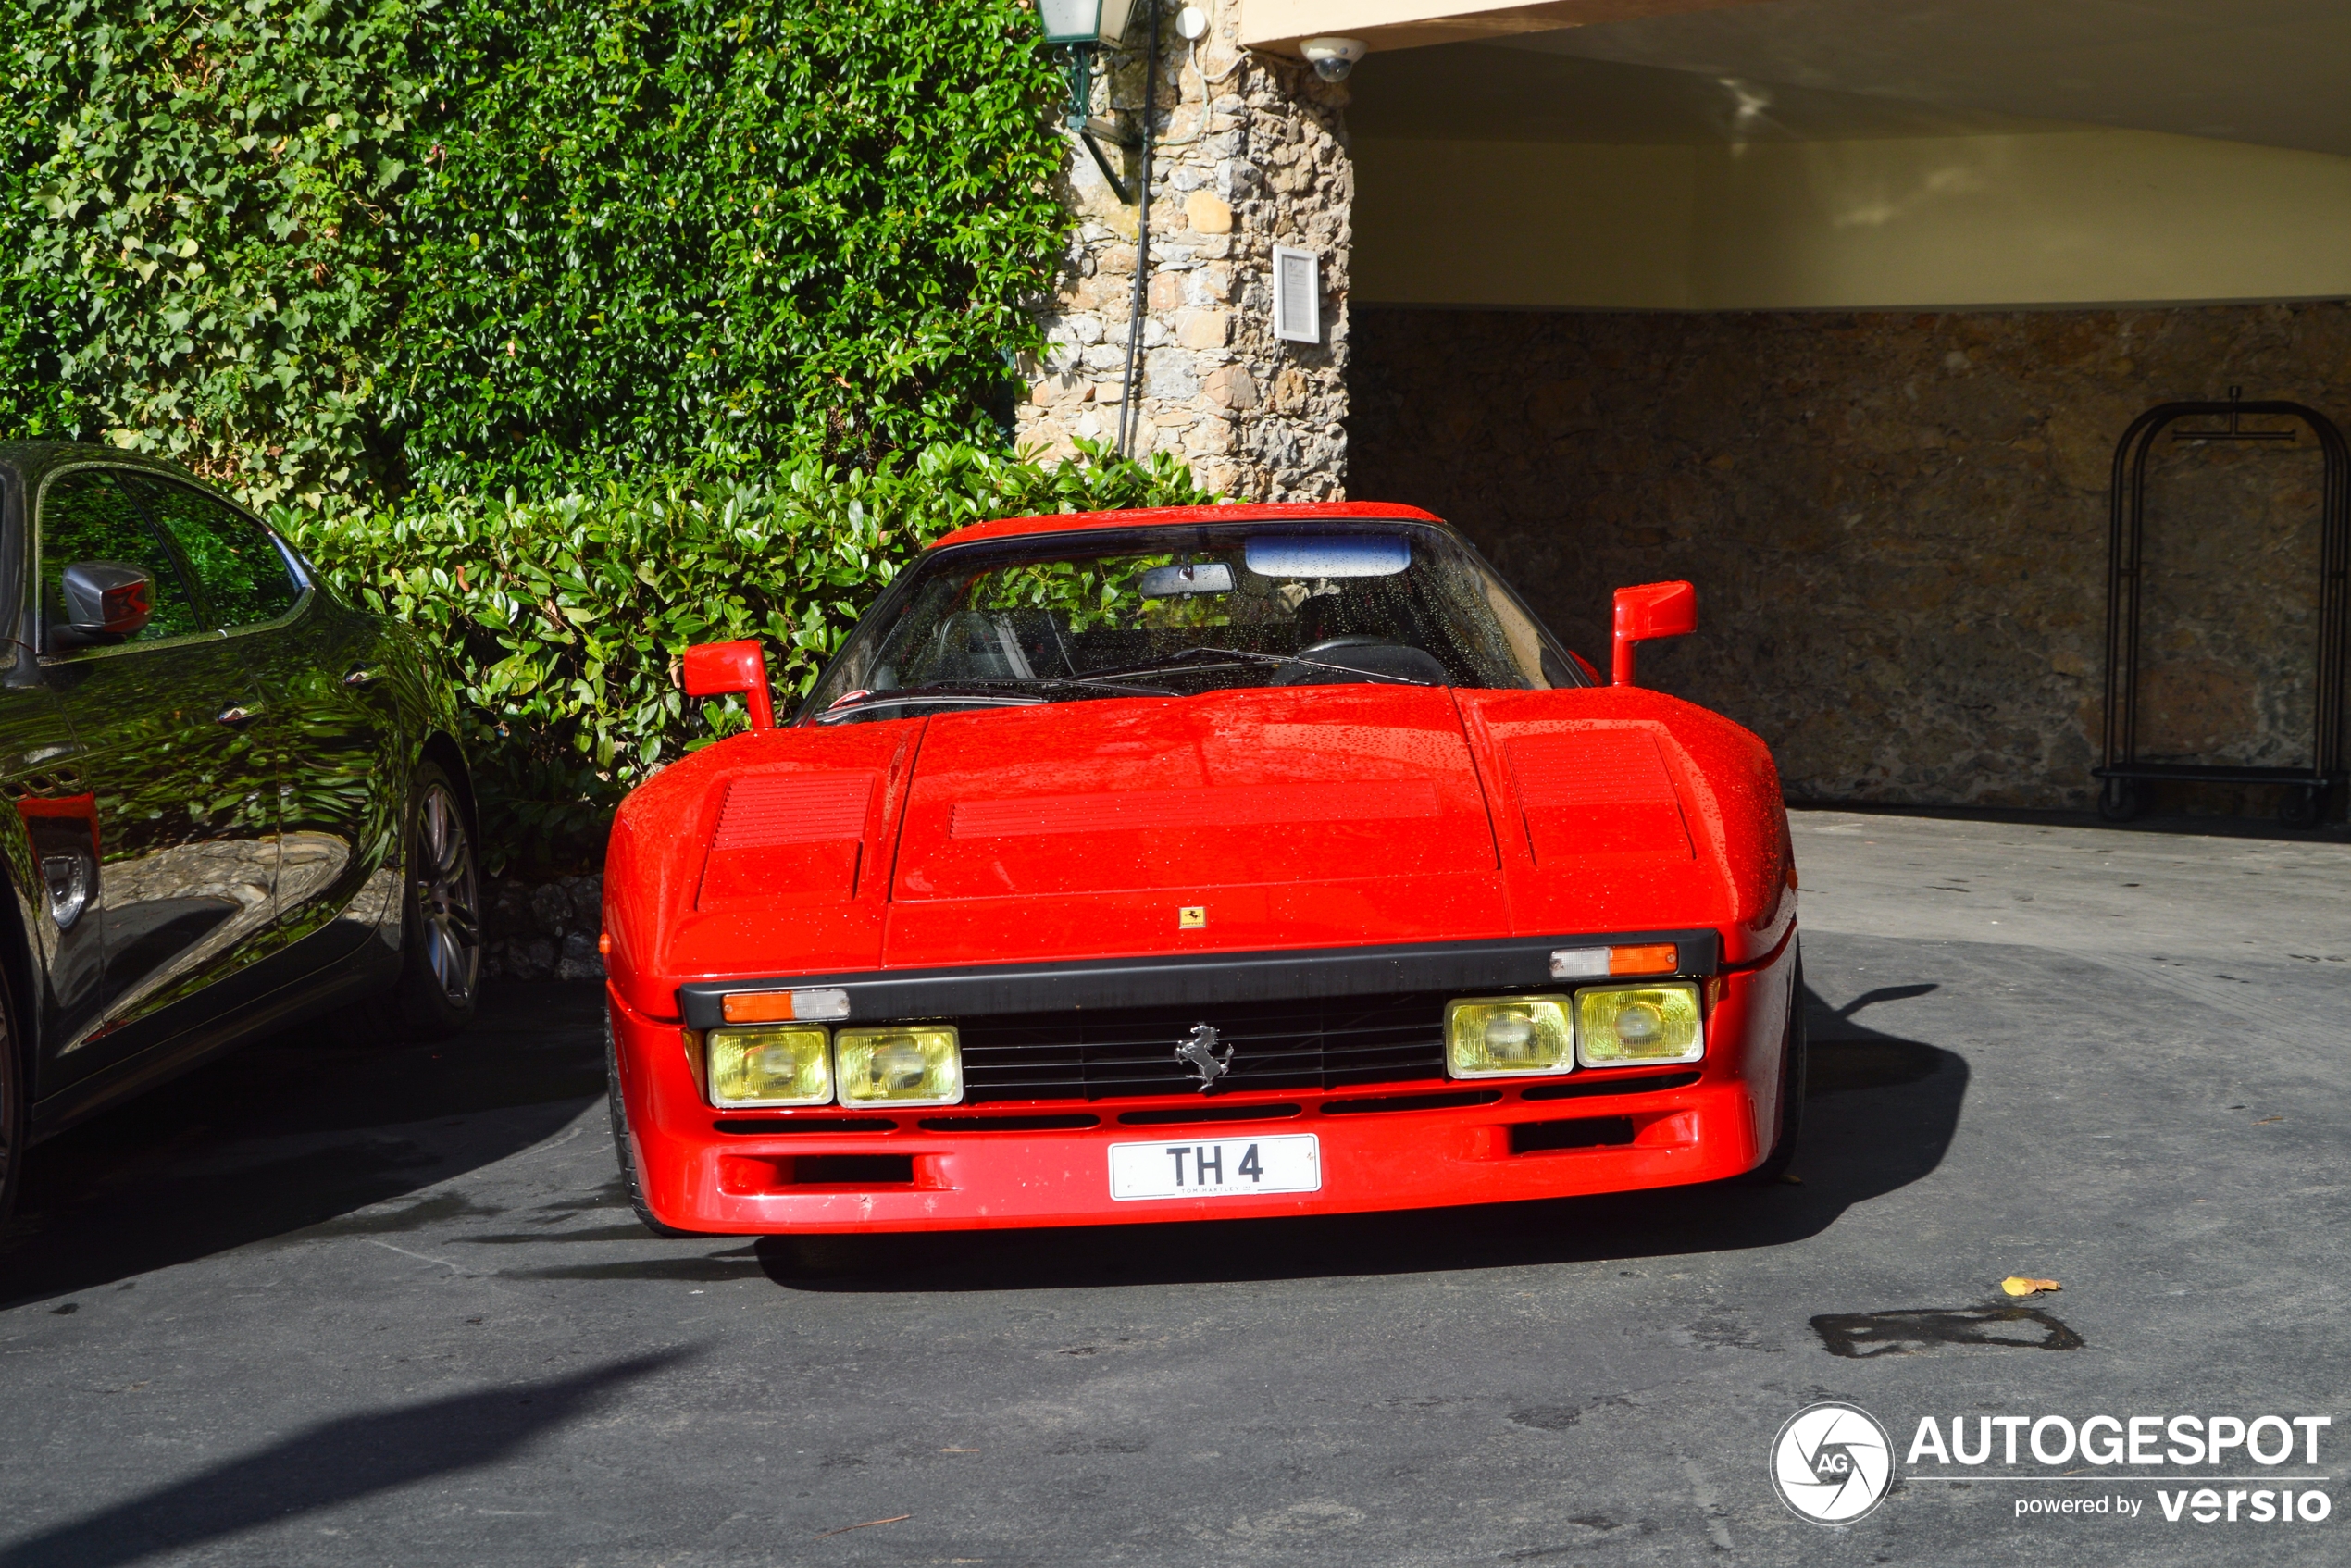 A 288 GTO shows up in Portofino